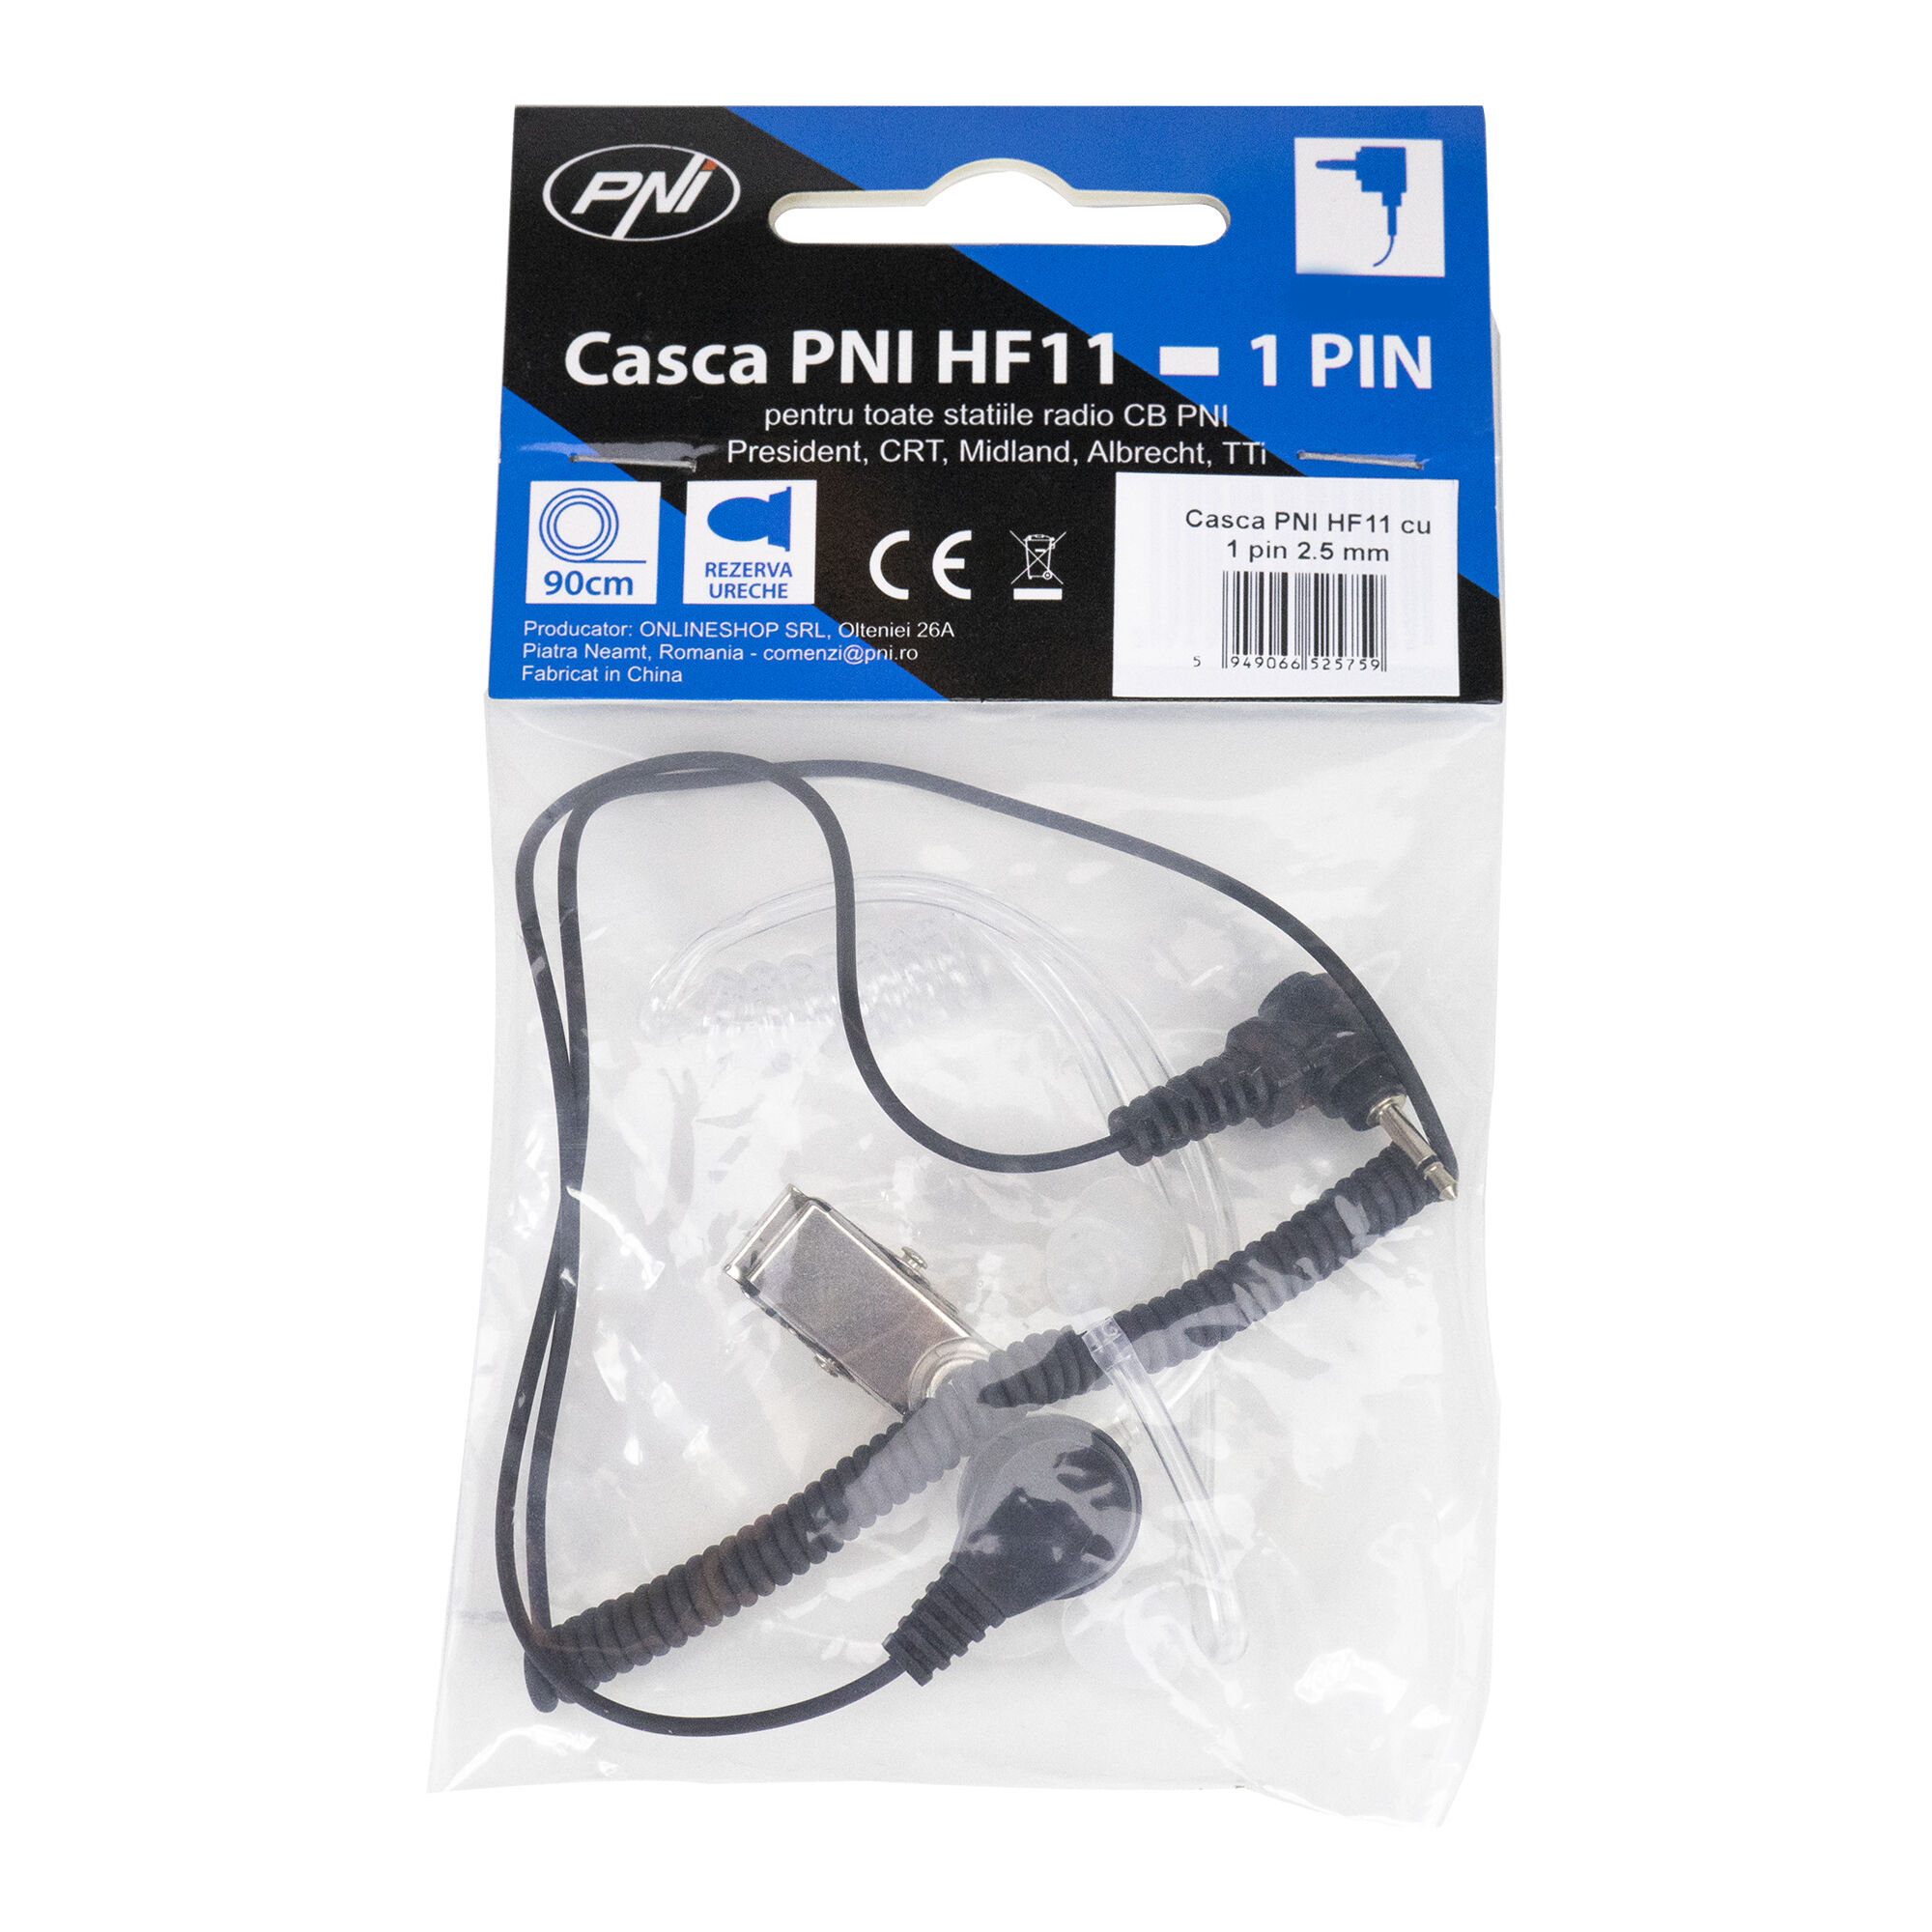 PNI HF11 Kopfhörer mit 1 Pin 2,5 mm, Akustikrohr, für fast alle Funkgeräte  - Bild 3